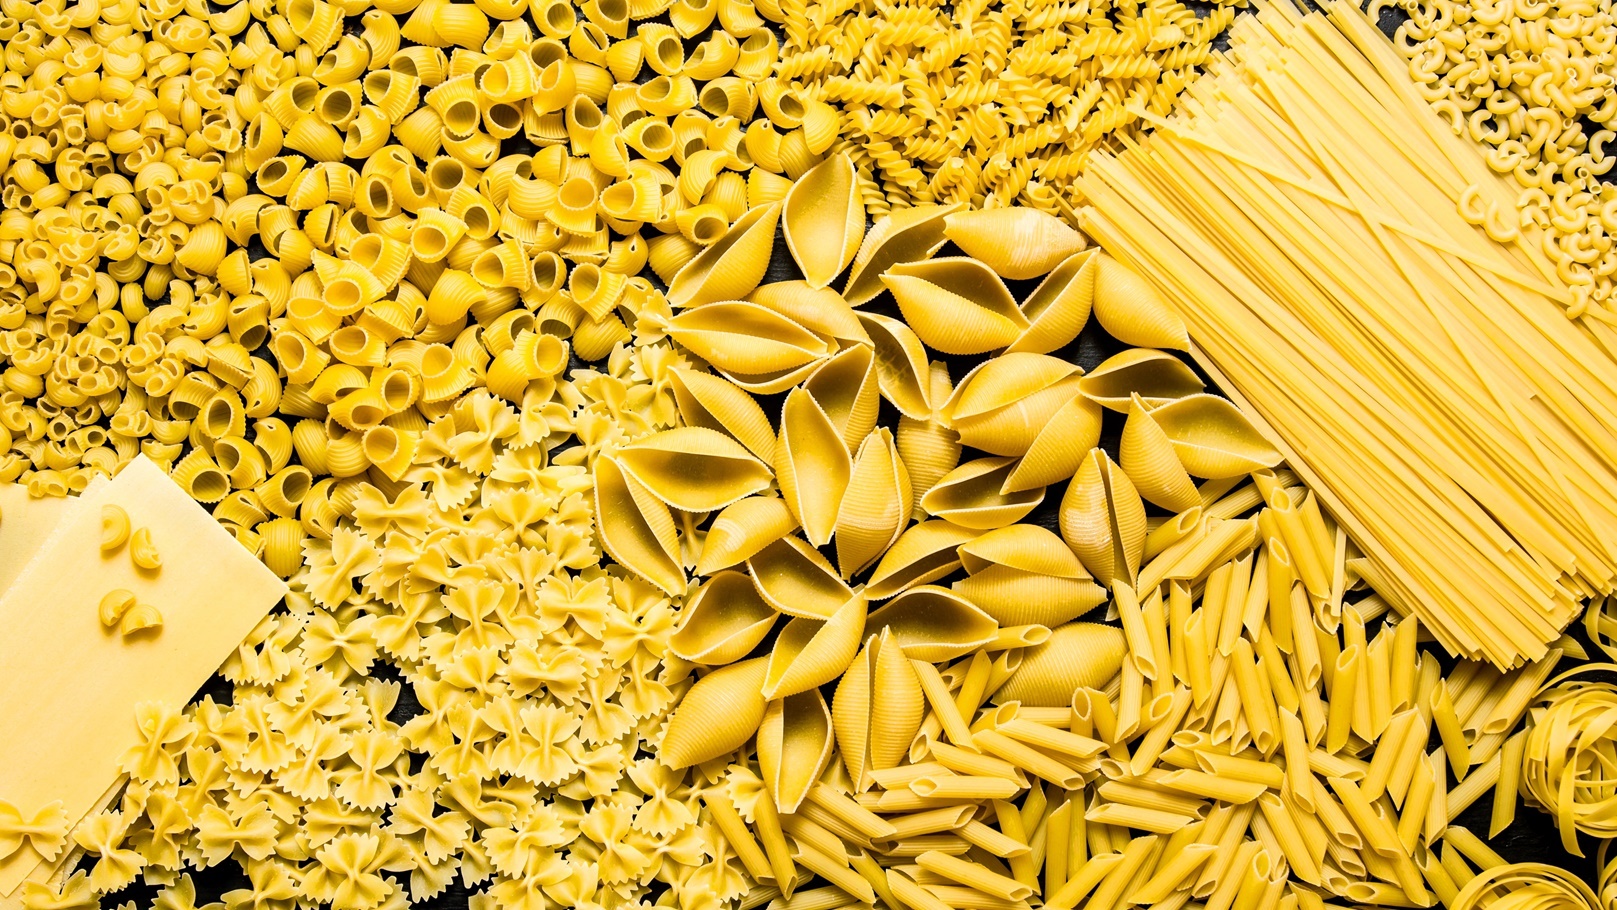 pasta-background-mixed-dried-pasta-2021-09-03-10-42-07-utc